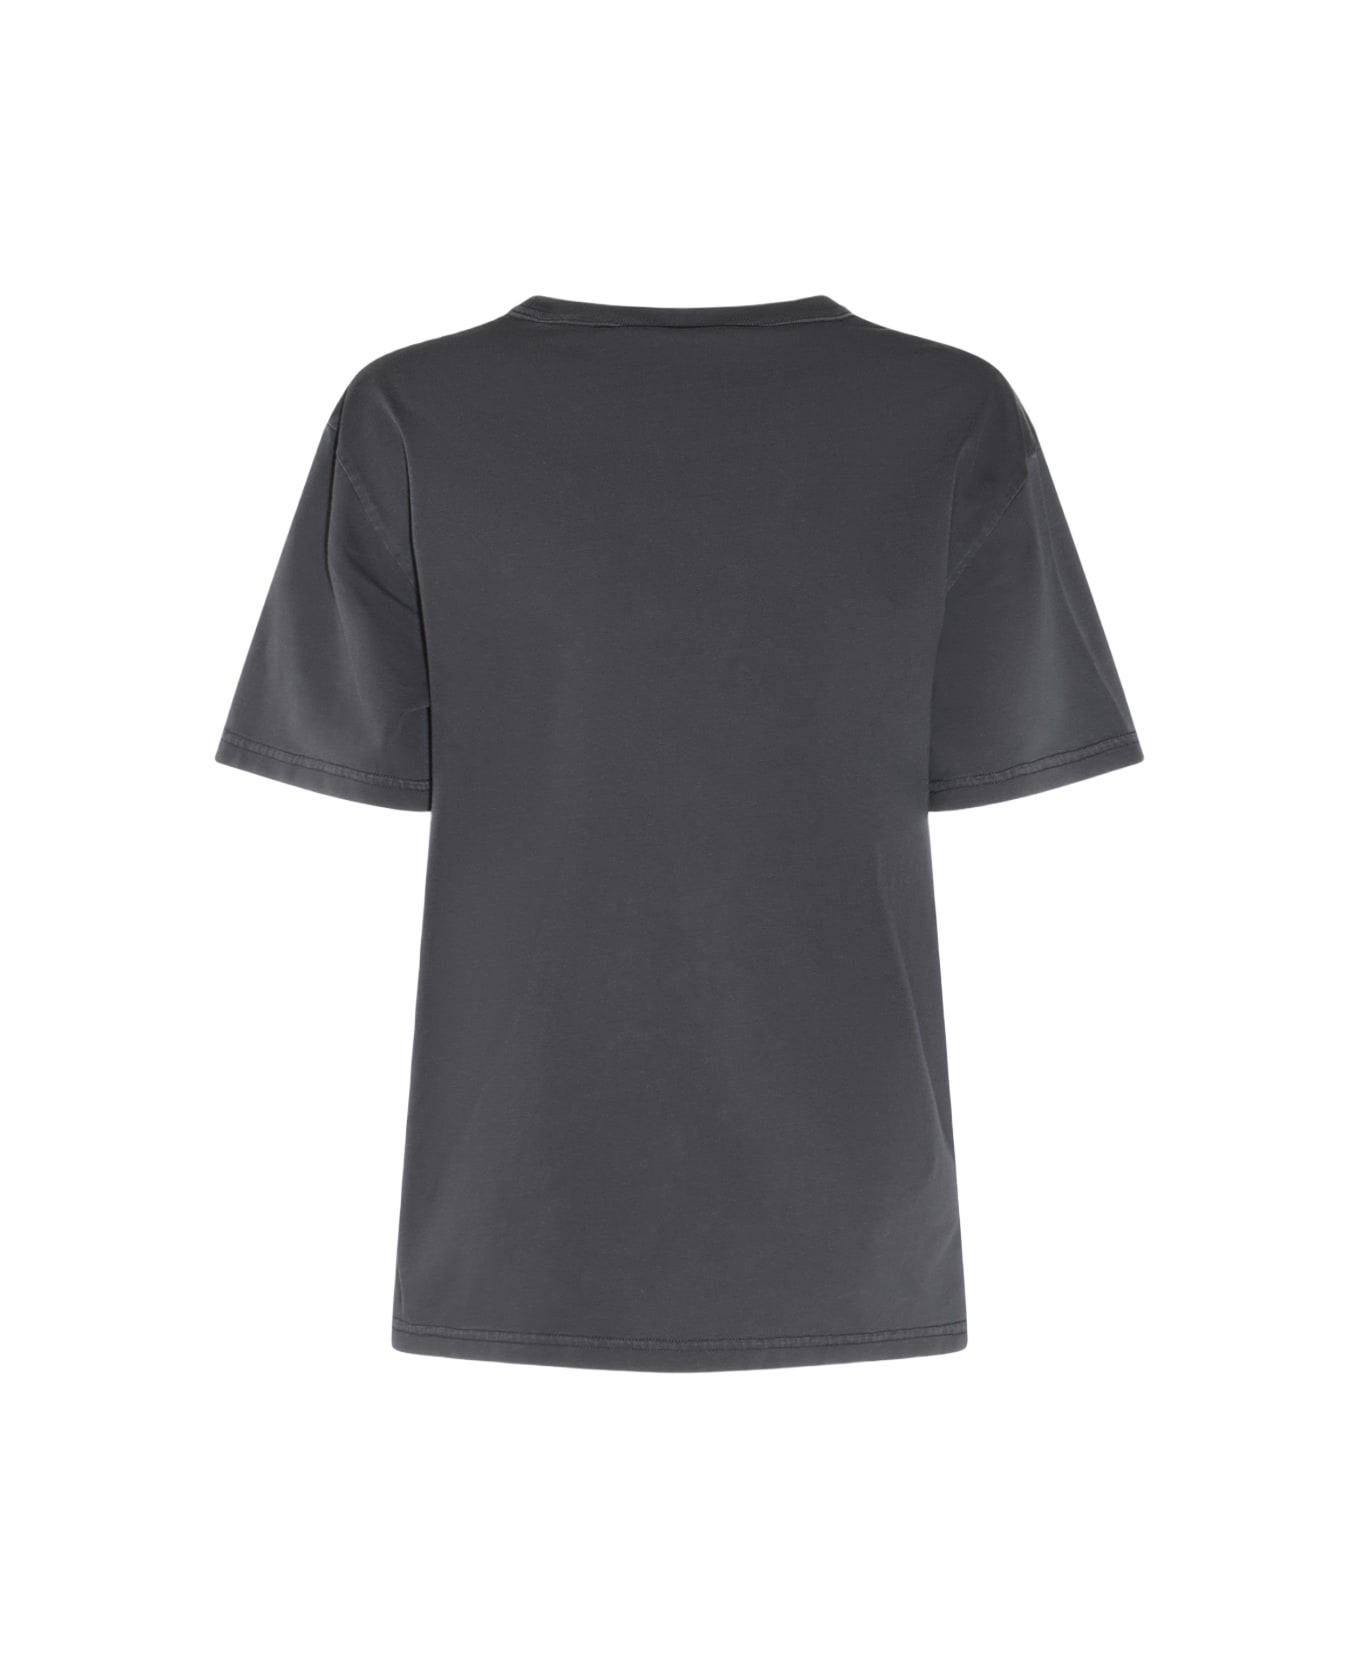 Alexander Wang Dark Grey Cotton T-shirt - SOFT OBSIDIAN